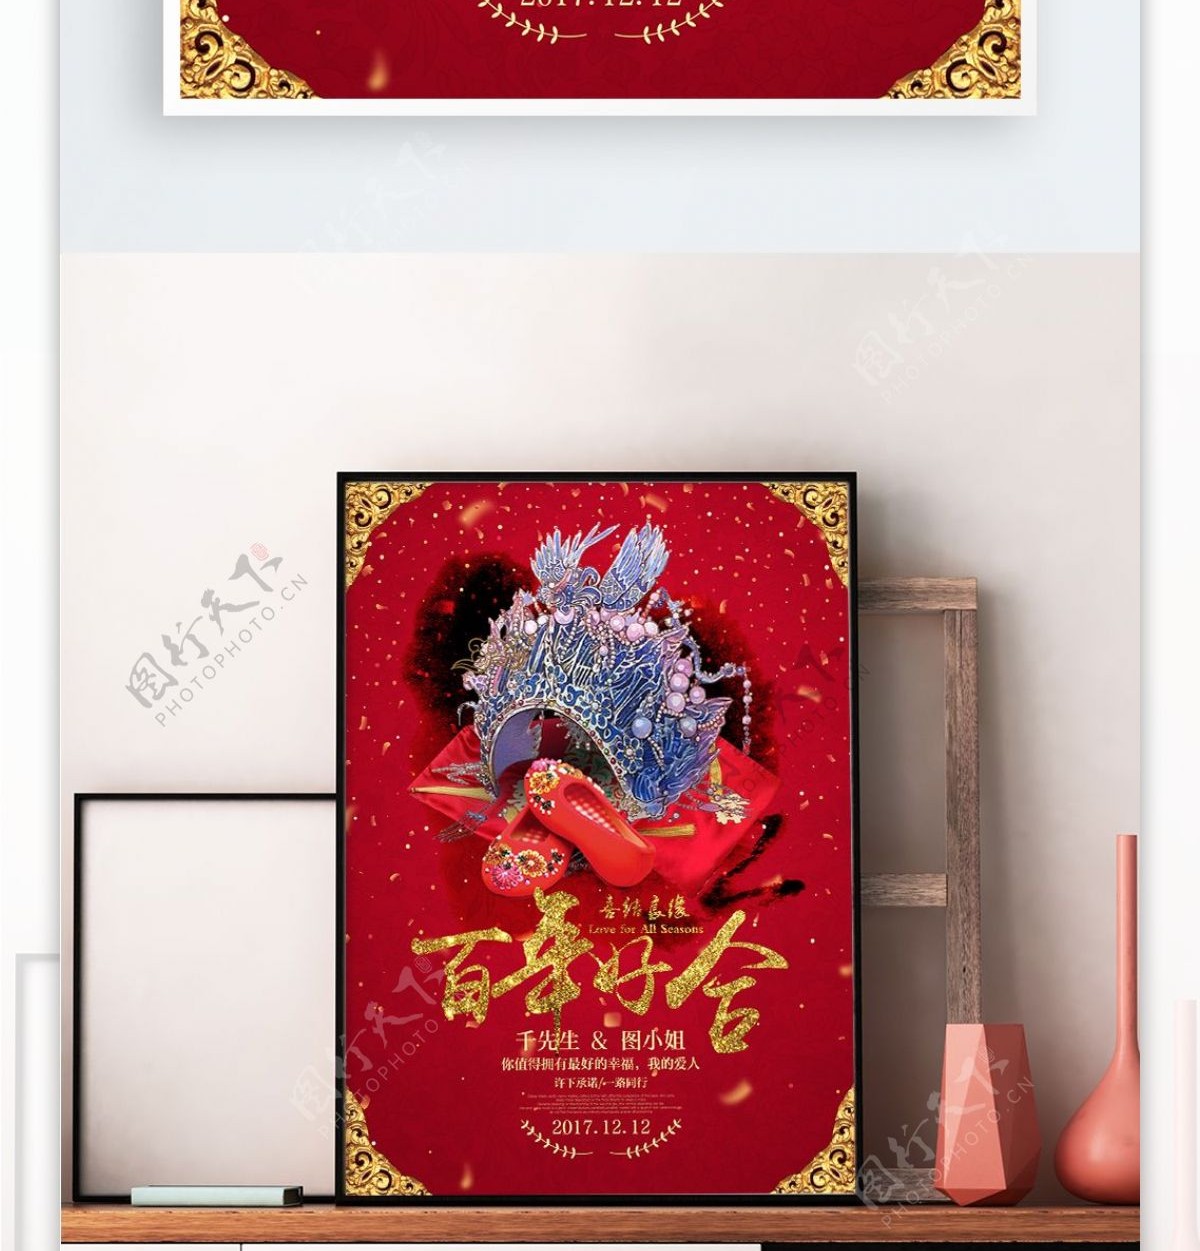 中国红喜庆结婚婚礼百年好合宣传海报